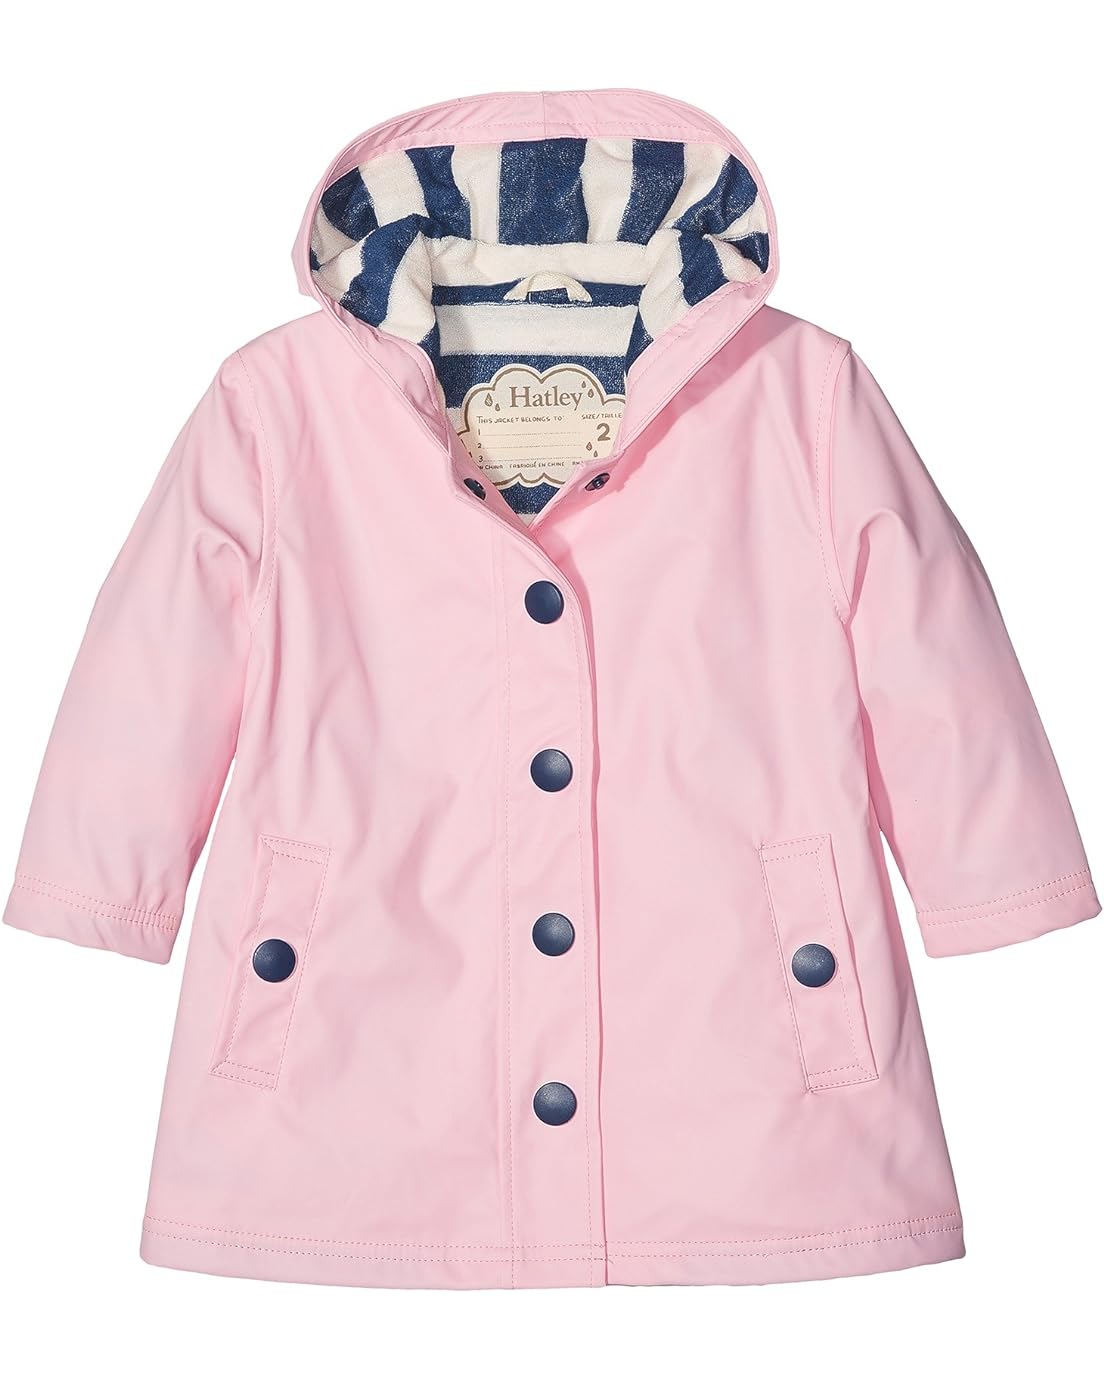 Hatley Kids Classic Pink Splash Jacket (Toddler/Little Kids/Big Kids)